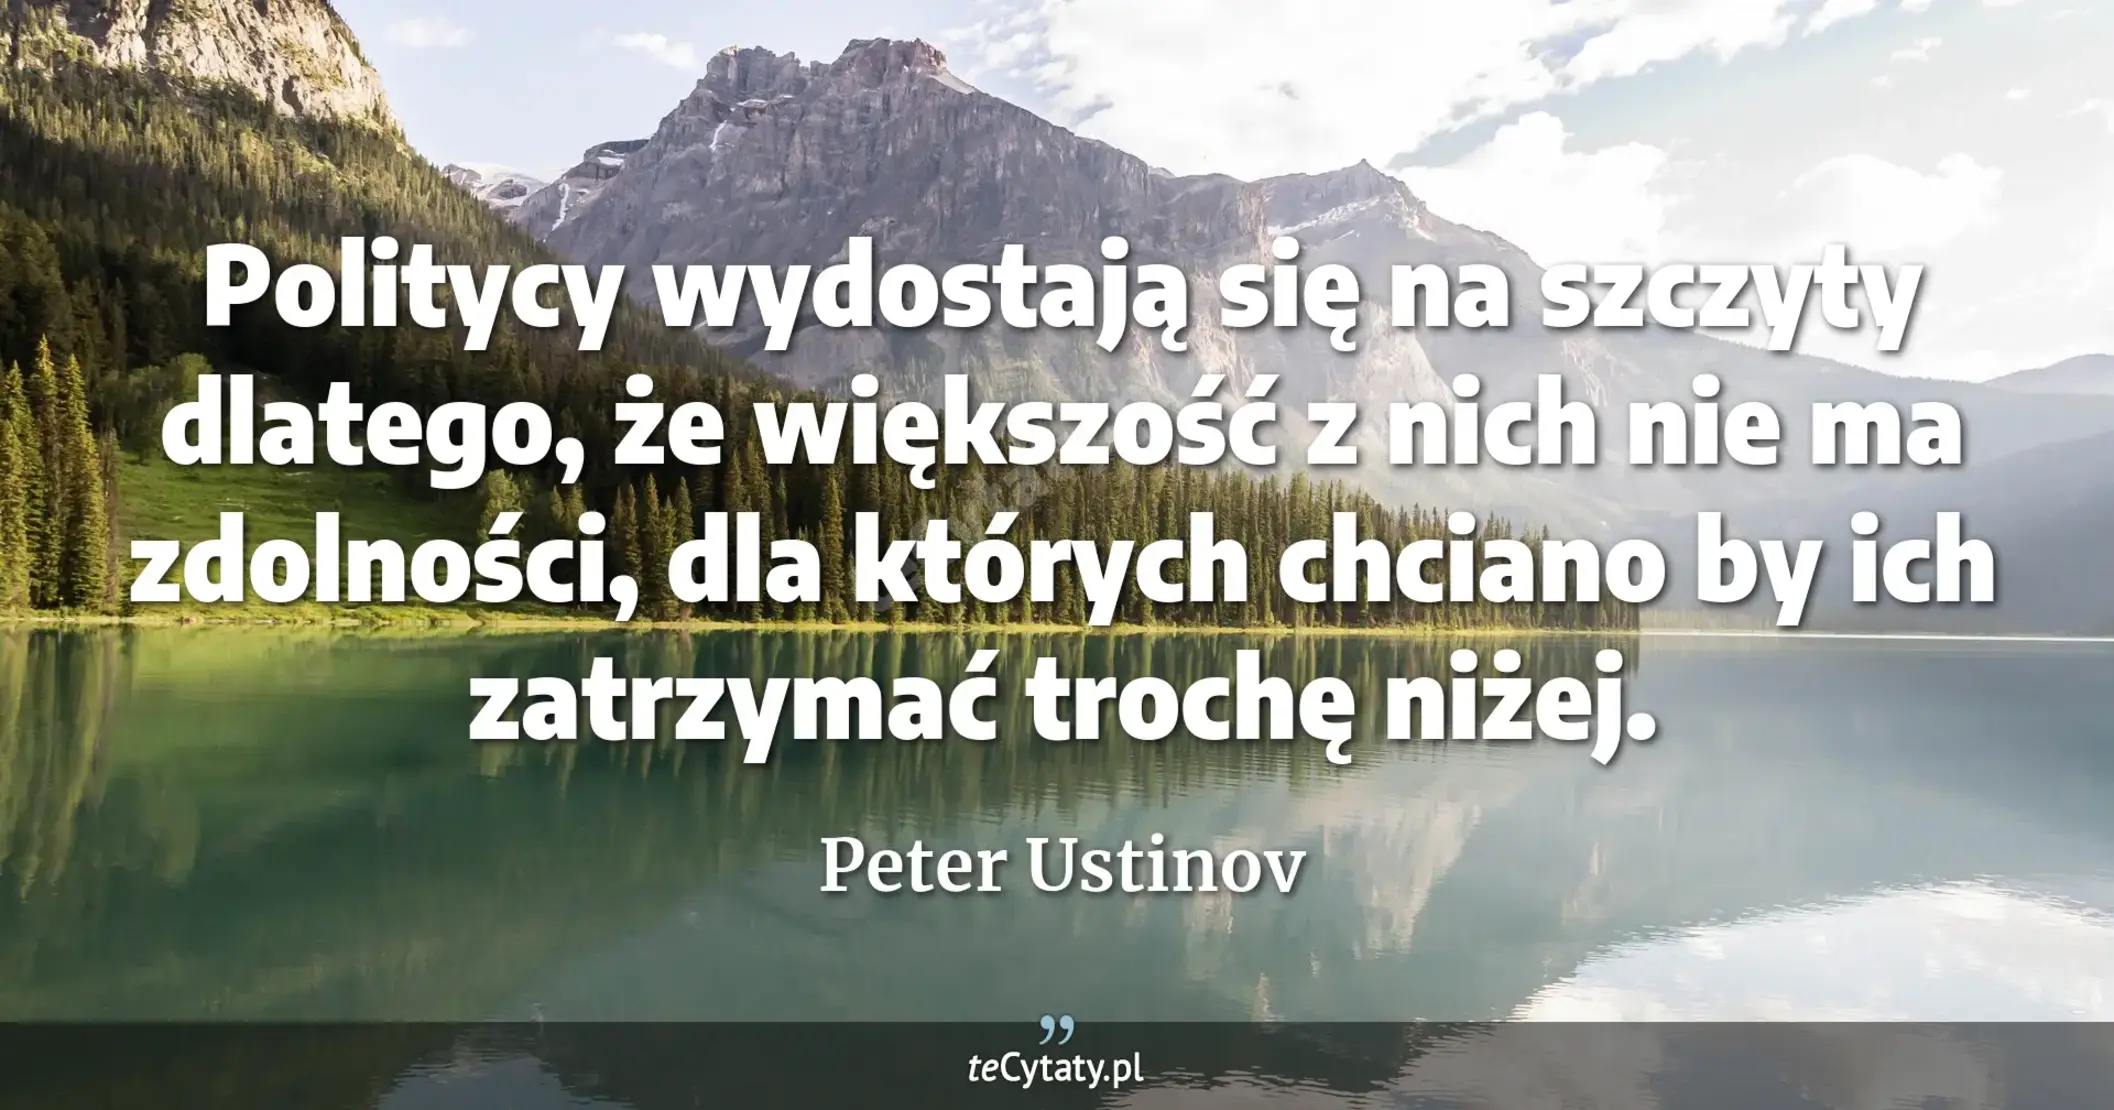 Politycy wydostają się na szczyty dlatego, że większość z nich nie ma zdolności, dla których chciano by ich zatrzymać trochę niżej. - Peter Ustinov